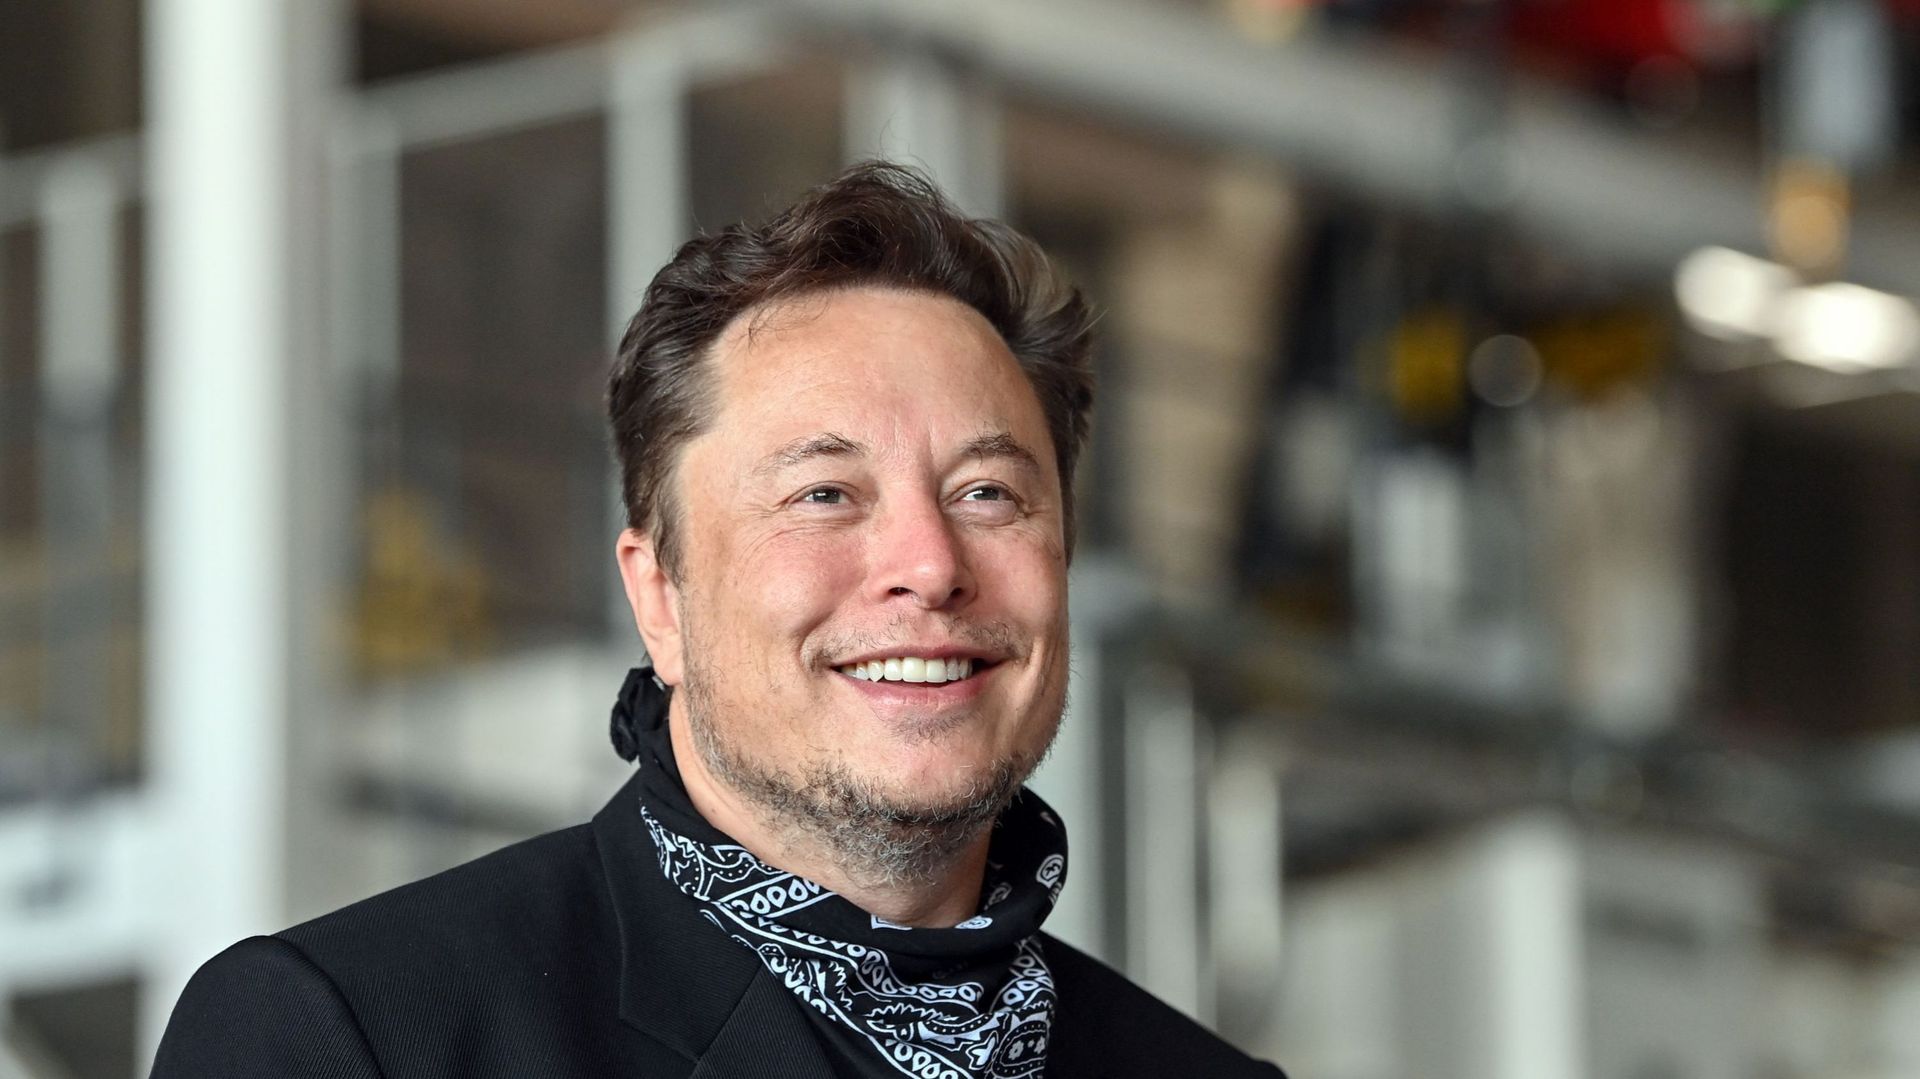 Elon Musk nommé personnalité de l'année par le magazine Time